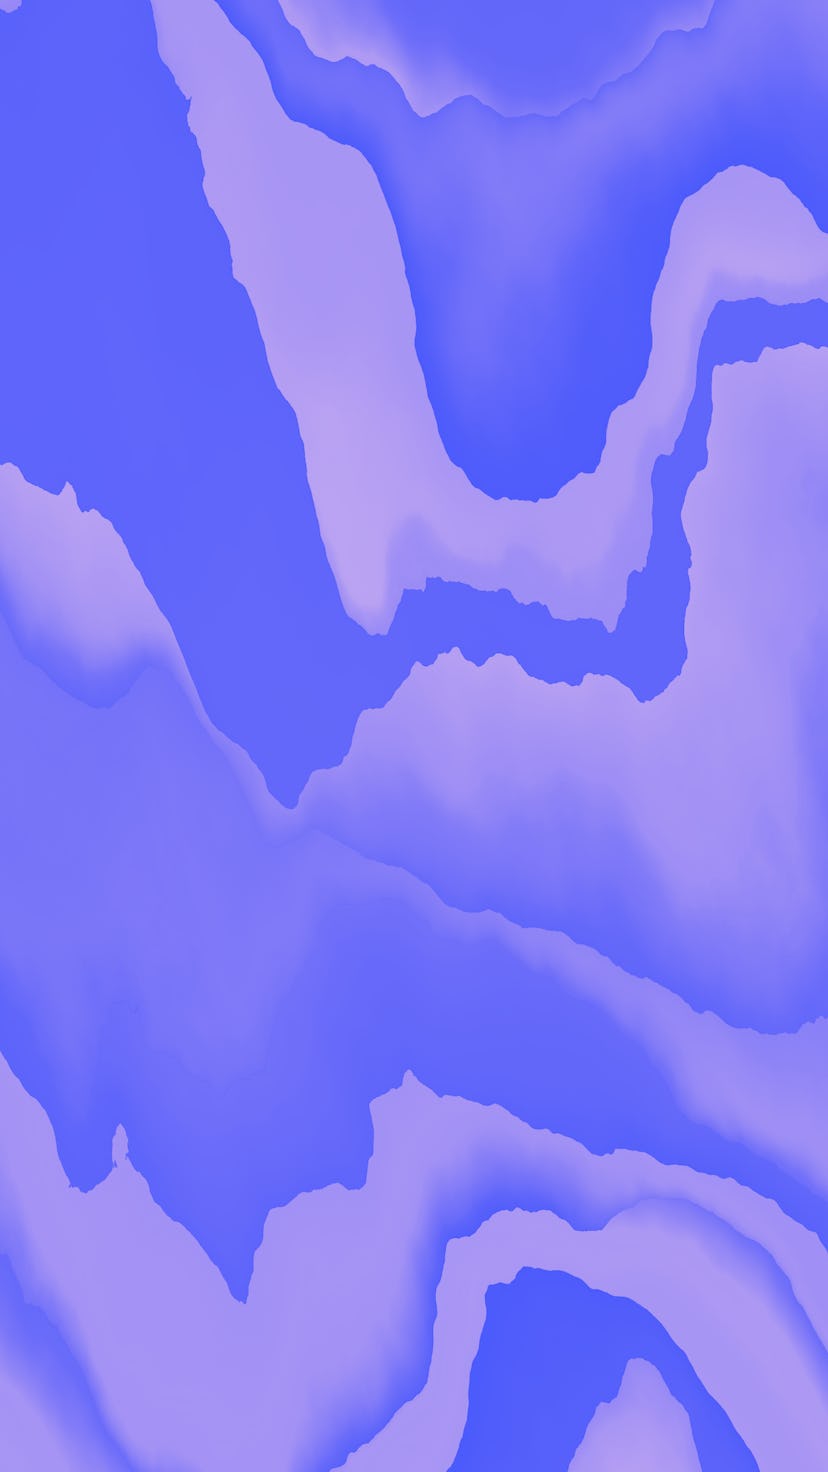 Mountainous terrain, distorted wave illustration